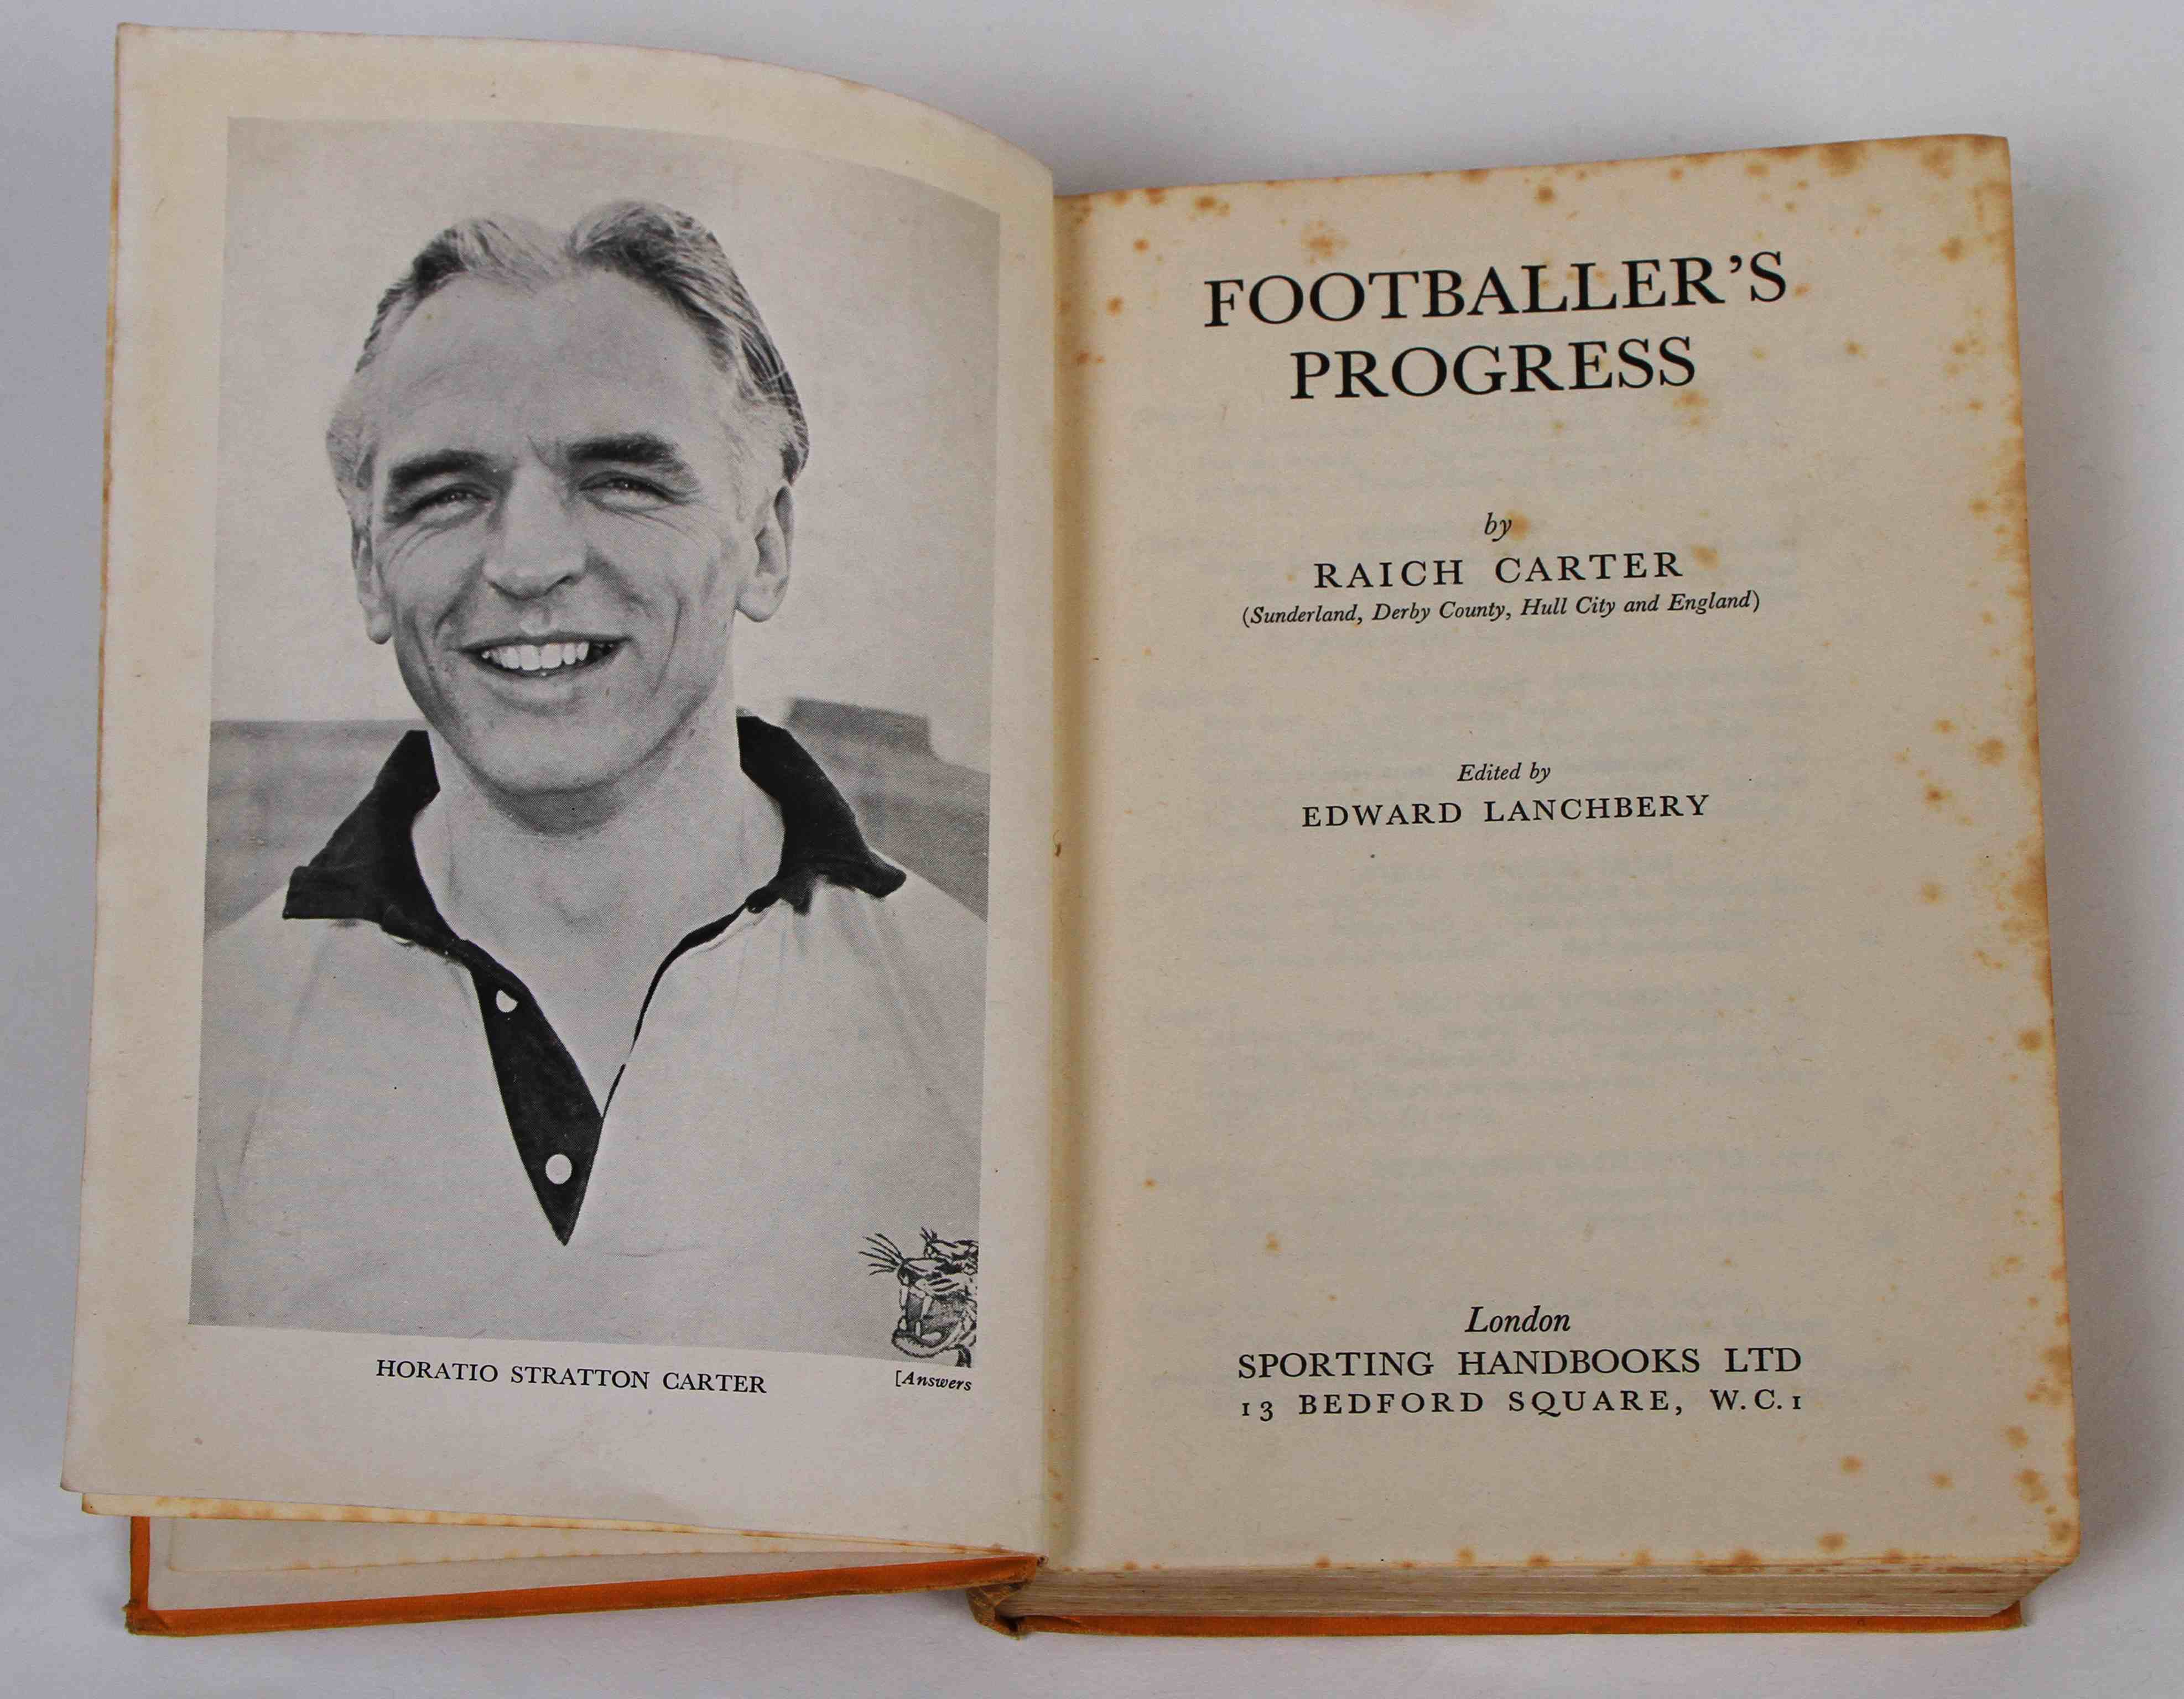 Raich Carter's 1950 book 'Footballer's Progress'